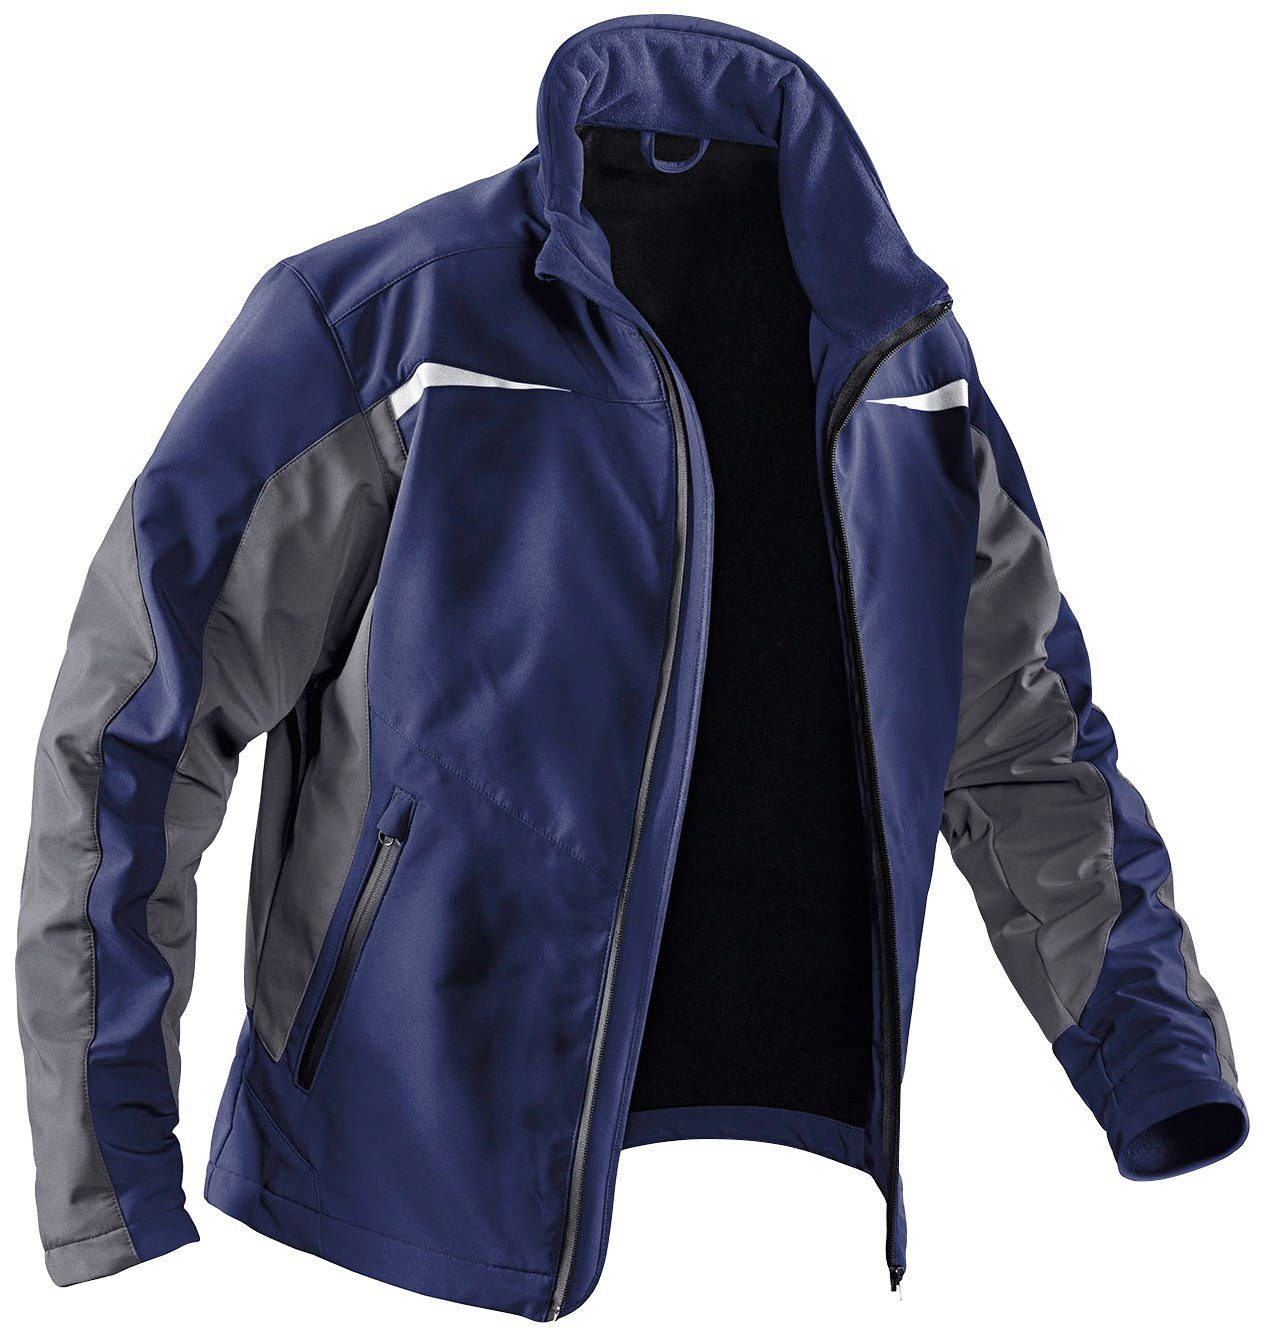 Kübler Arbeitsjacke Softshell Jacke dunkelblau-anthrazit Taschen, winddicht, mit wasserabweisend 4